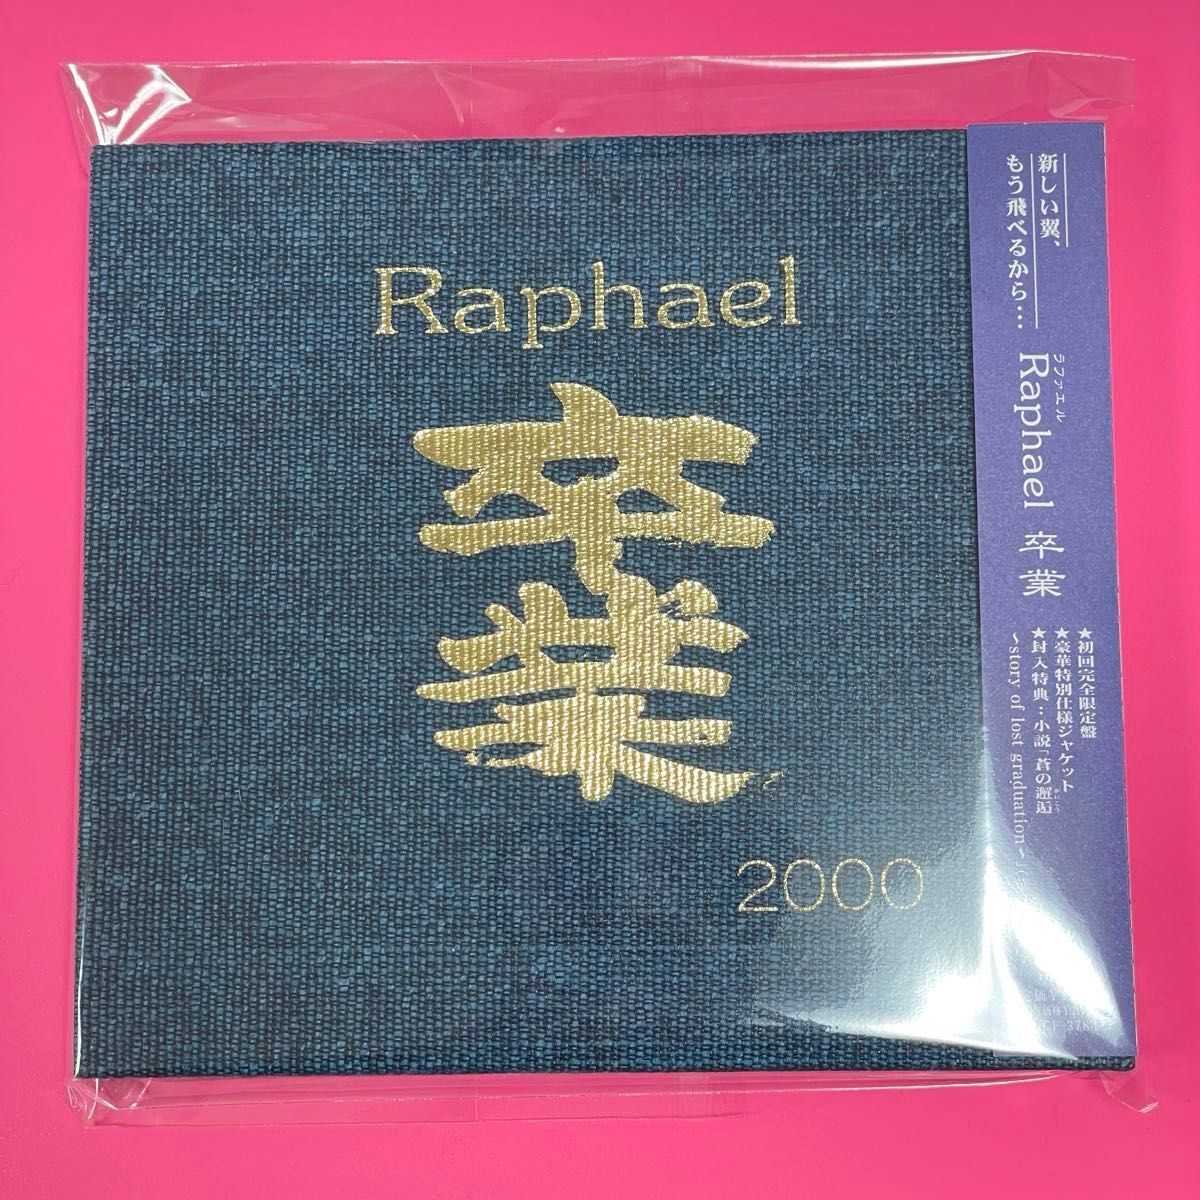 Raphael 卒業 初回限定版 帯付き 封入特典小説『蒼の邂追 』 ポストカード ラファエル